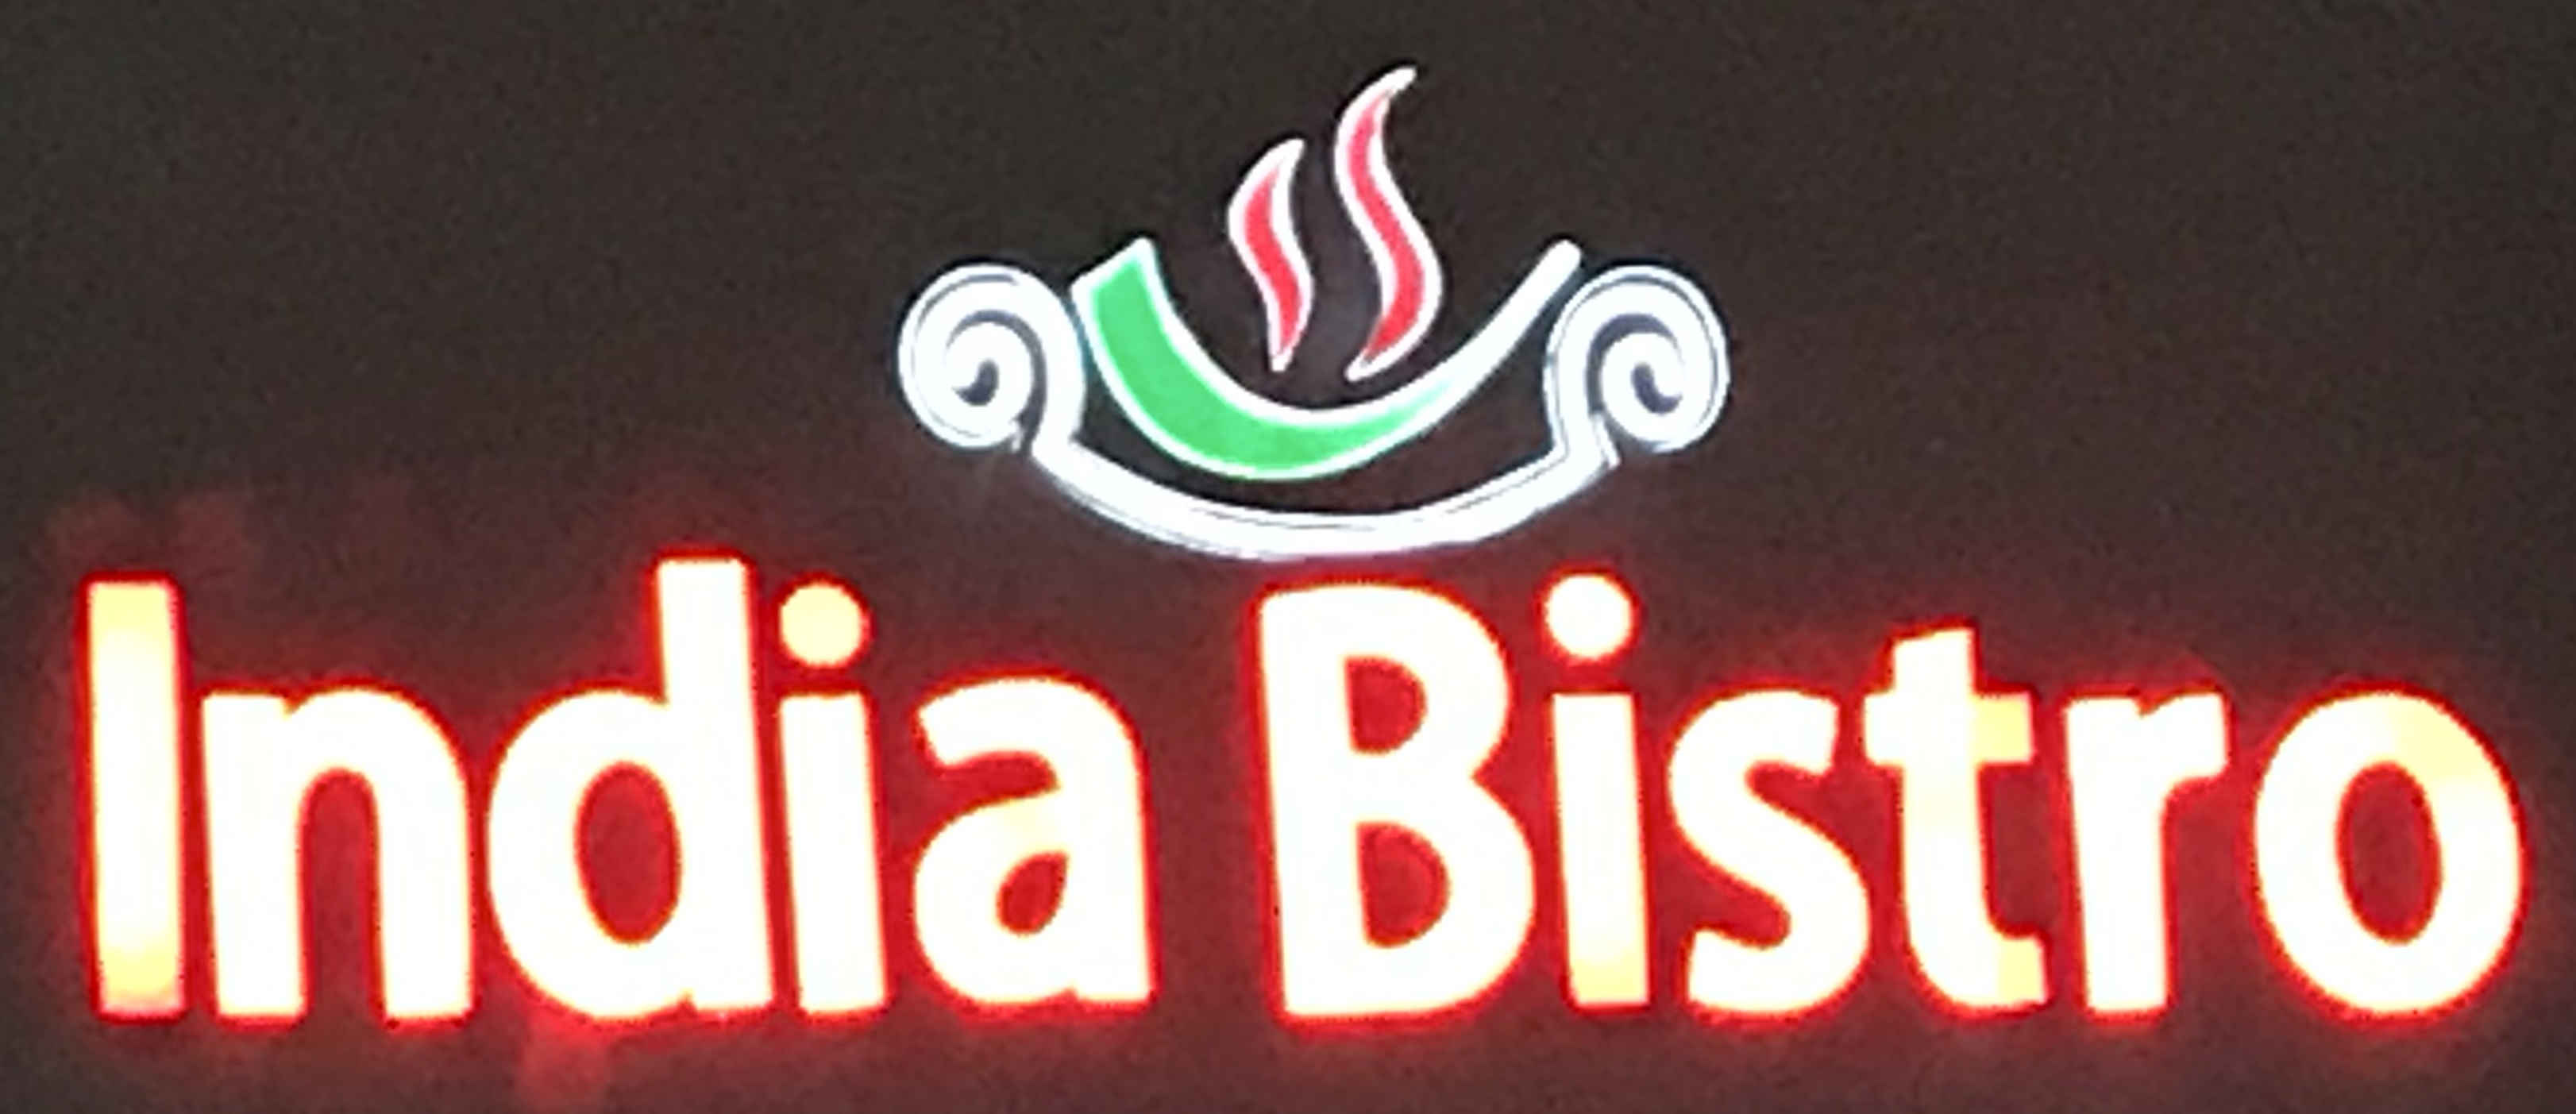 India Bistro